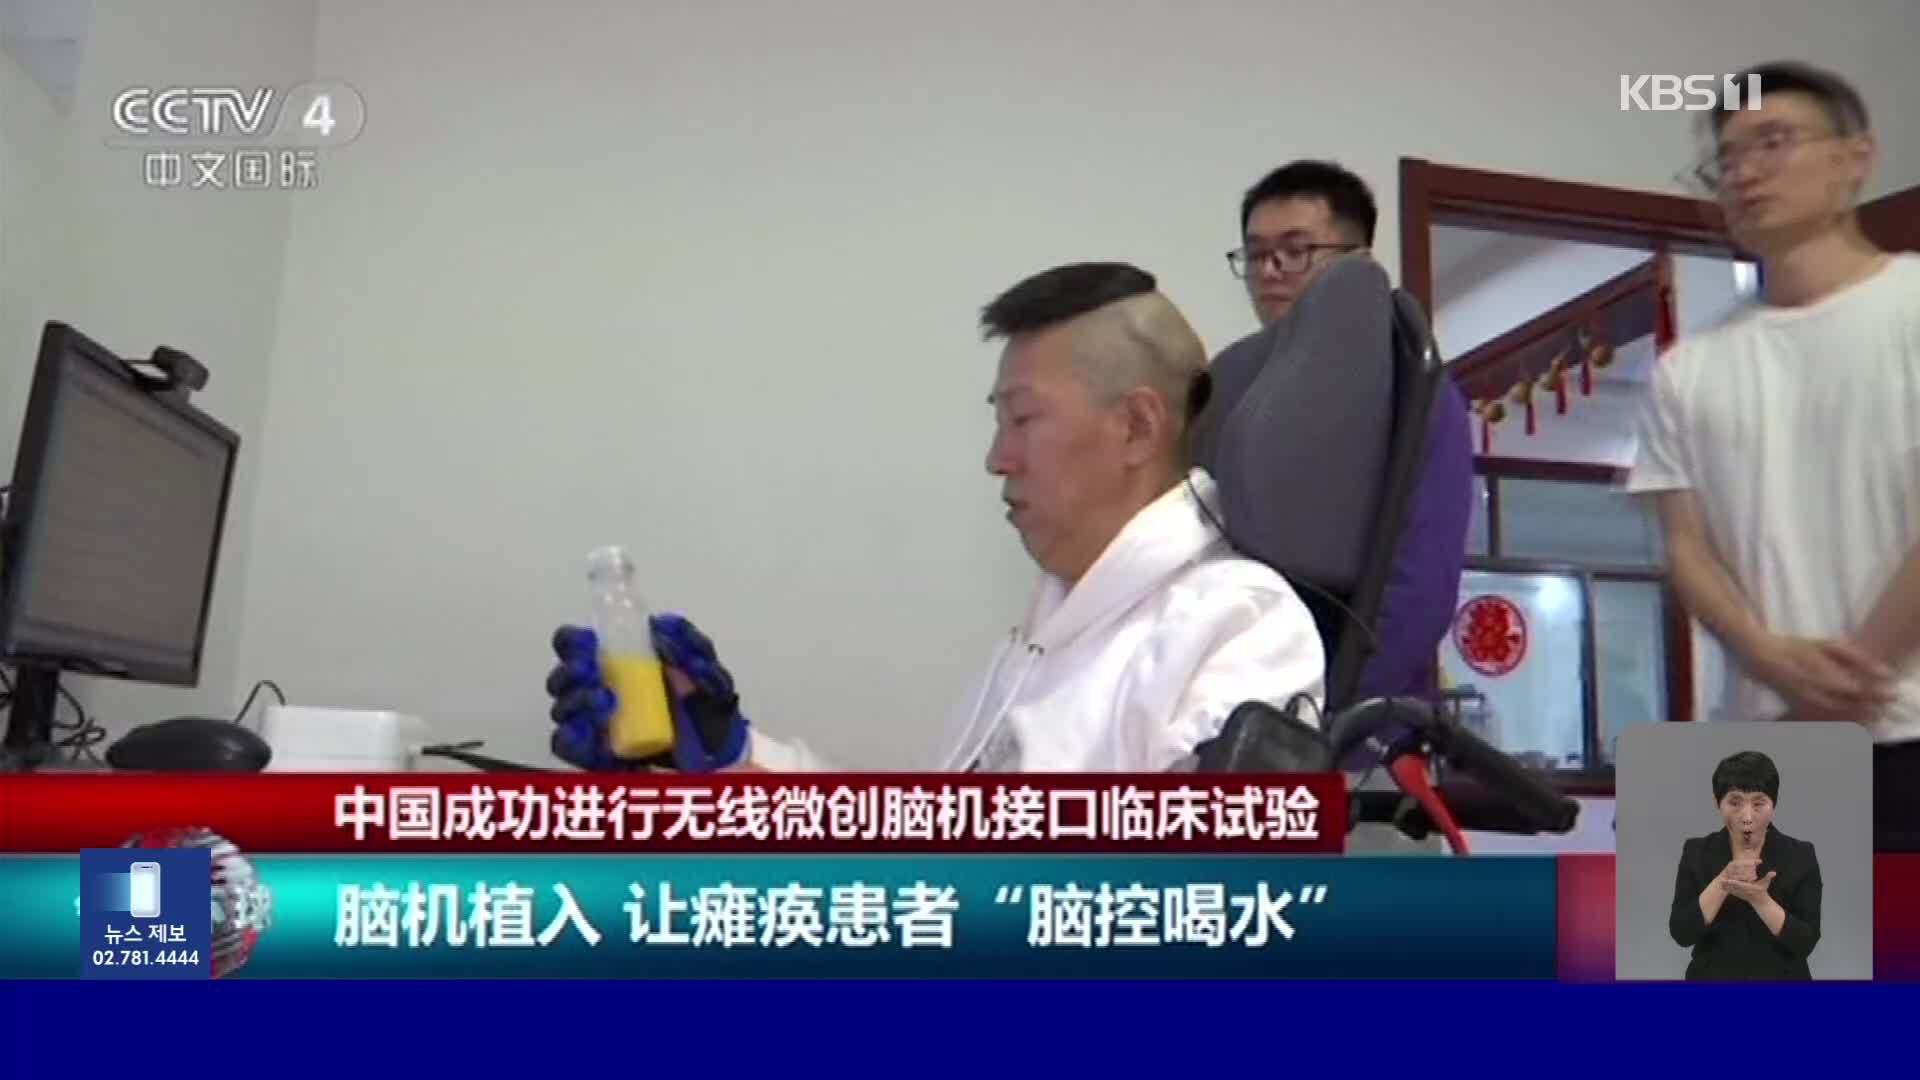 중국, 마비 환자에 컴퓨터 칩 이식 임상 시험 성공